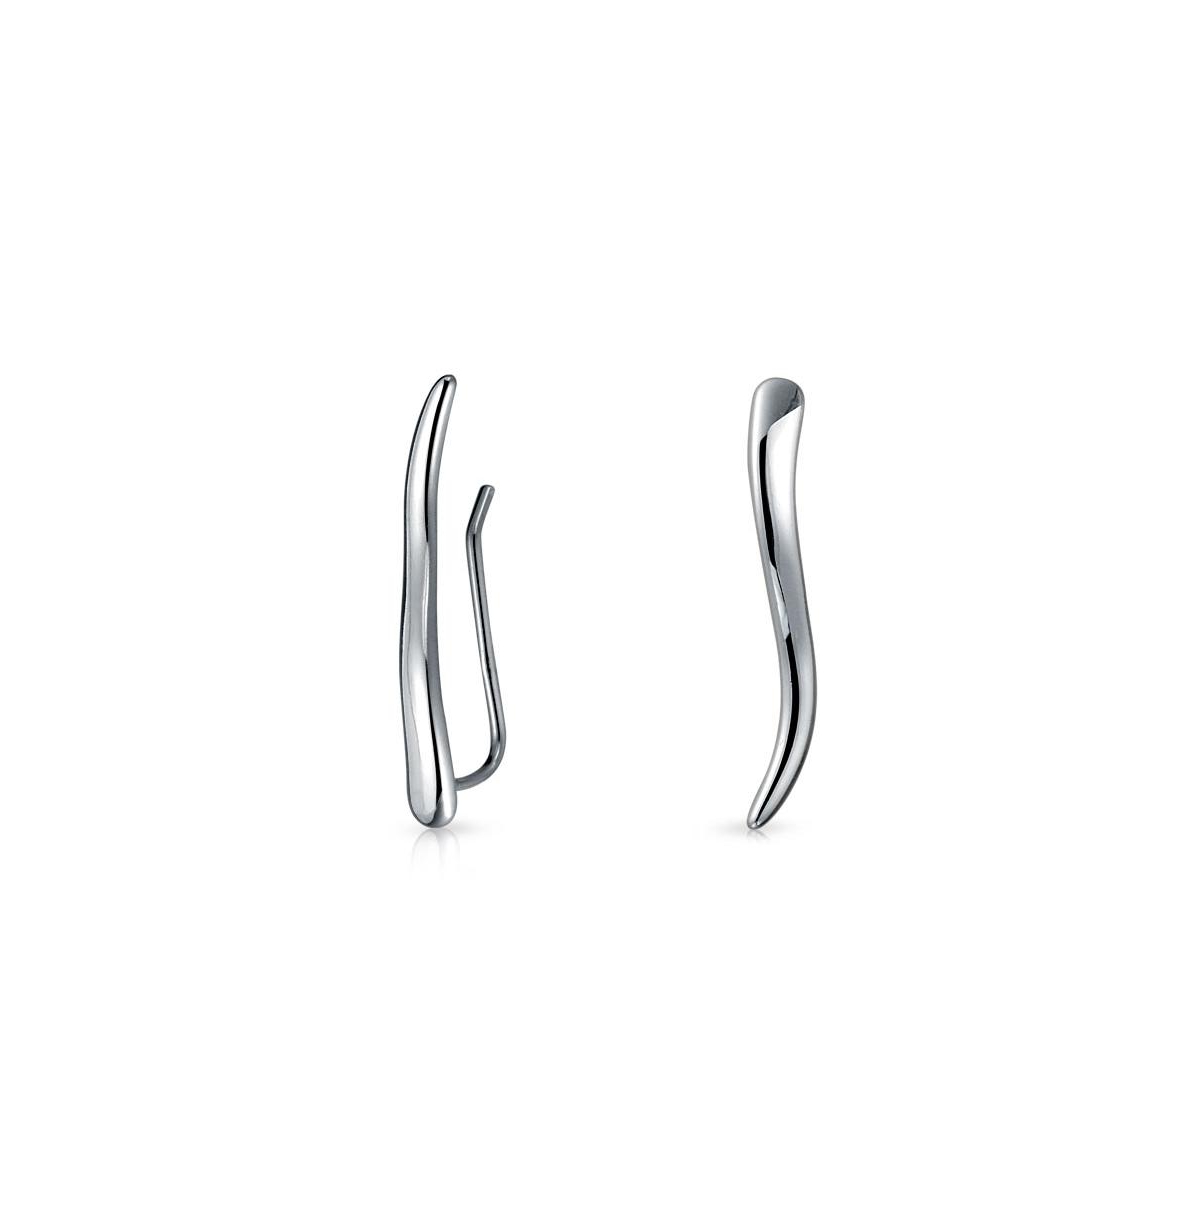 Minimalist Geometric Linear Wave Ear Pin Crawlers Climbers Earrings For Women Teen.925 Sterling Silver - Silver